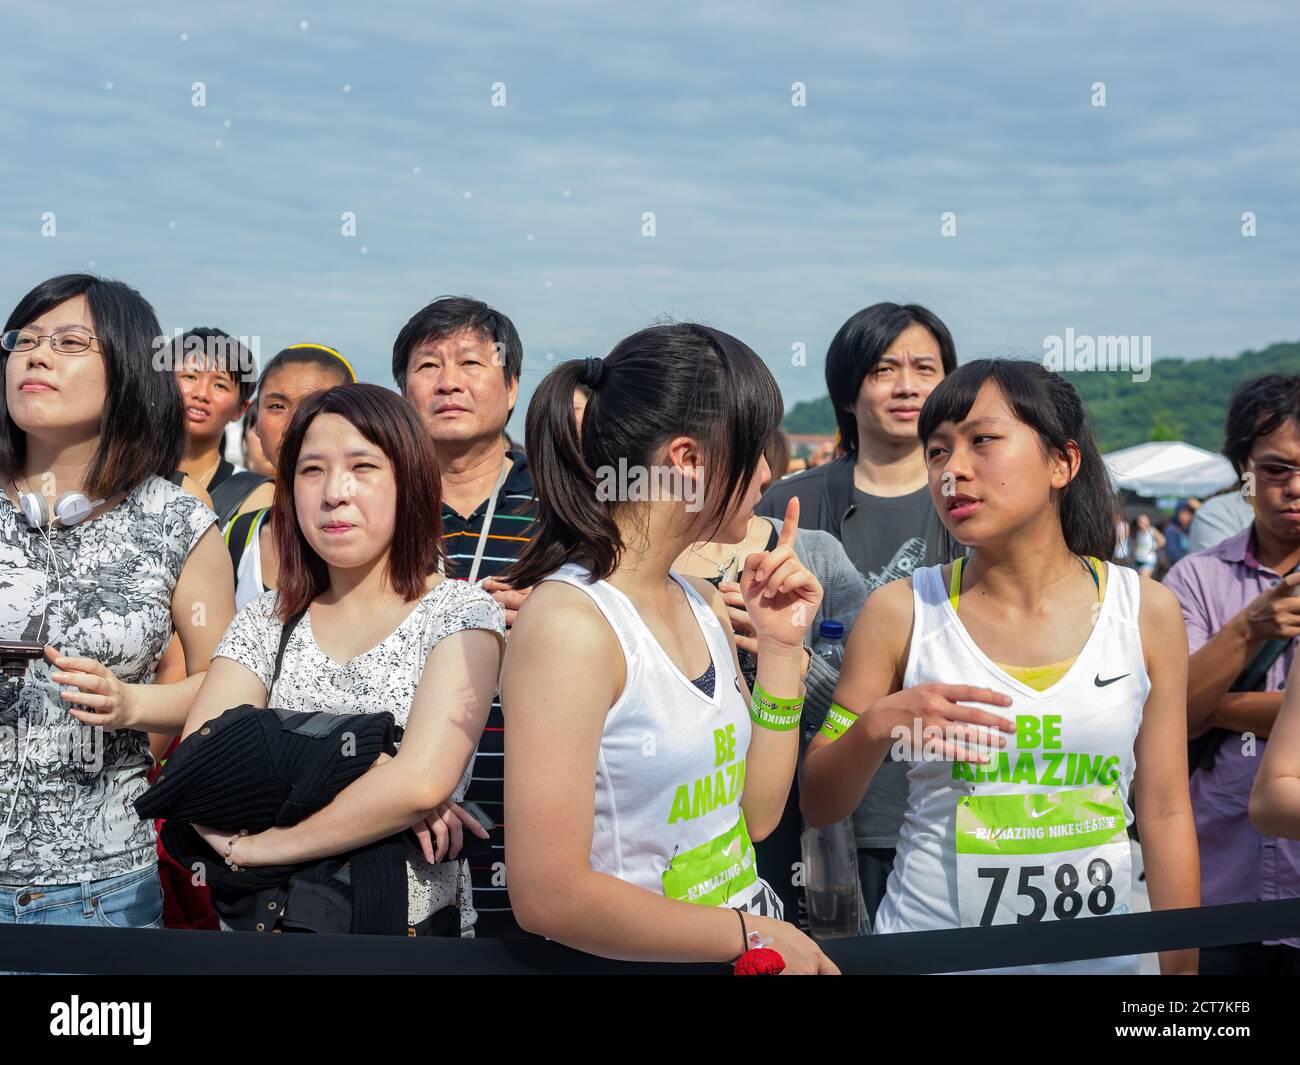 Taipei, 29 avril 2012 - vue du matin de l'événement de course Nike be Amazing 5K Banque D'Images